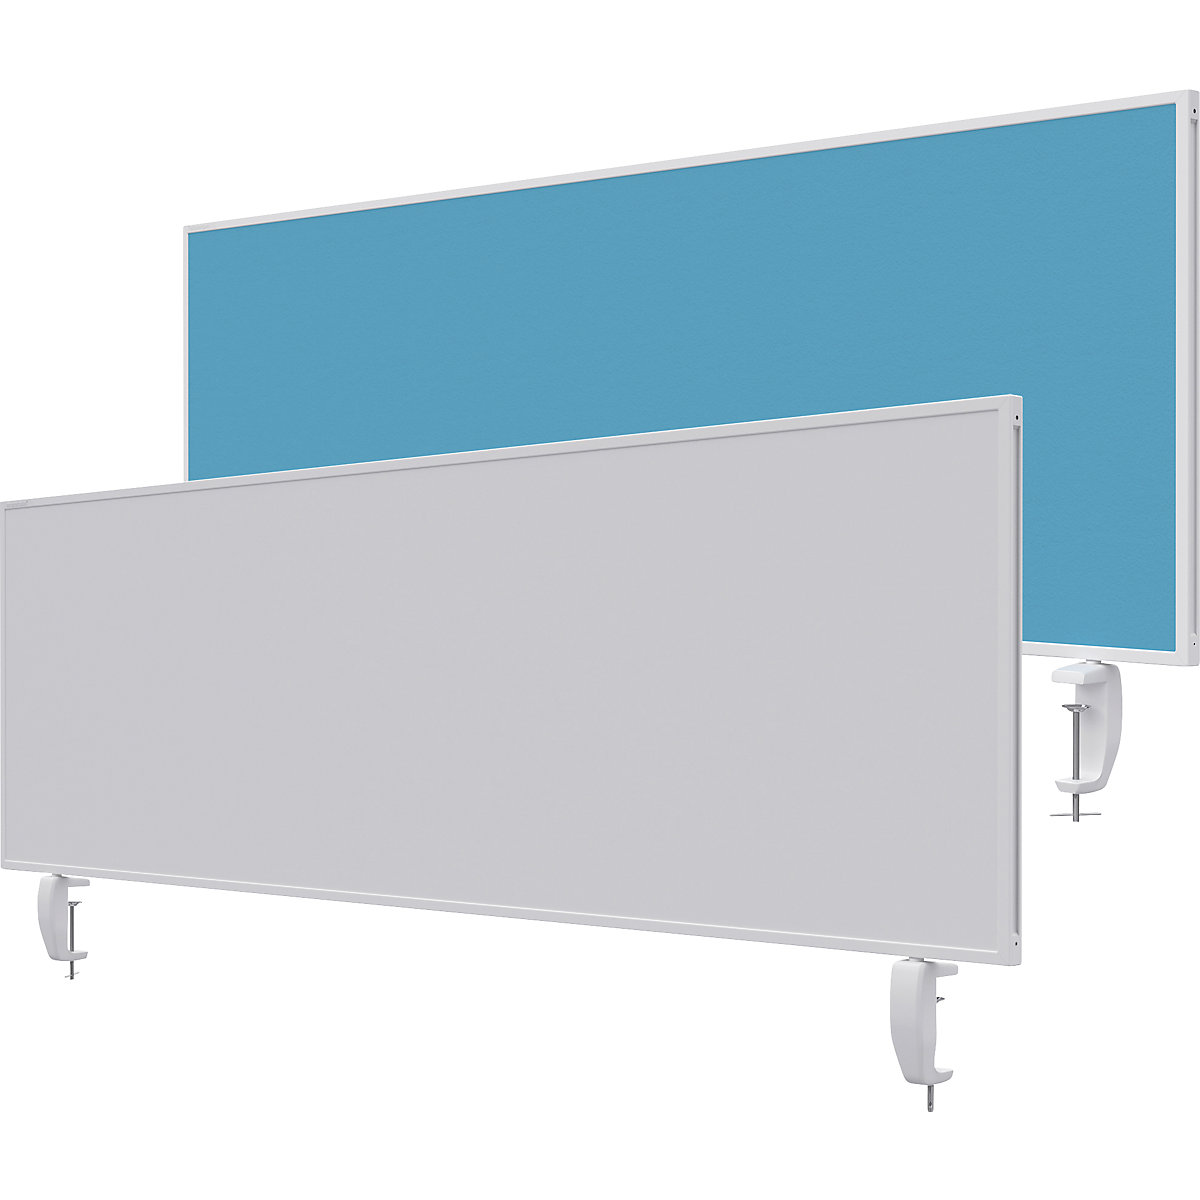 Namizna predelna stena VarioPin – magnetoplan, bela tabla/klobučevina, širina 1600 mm, turkizne barve